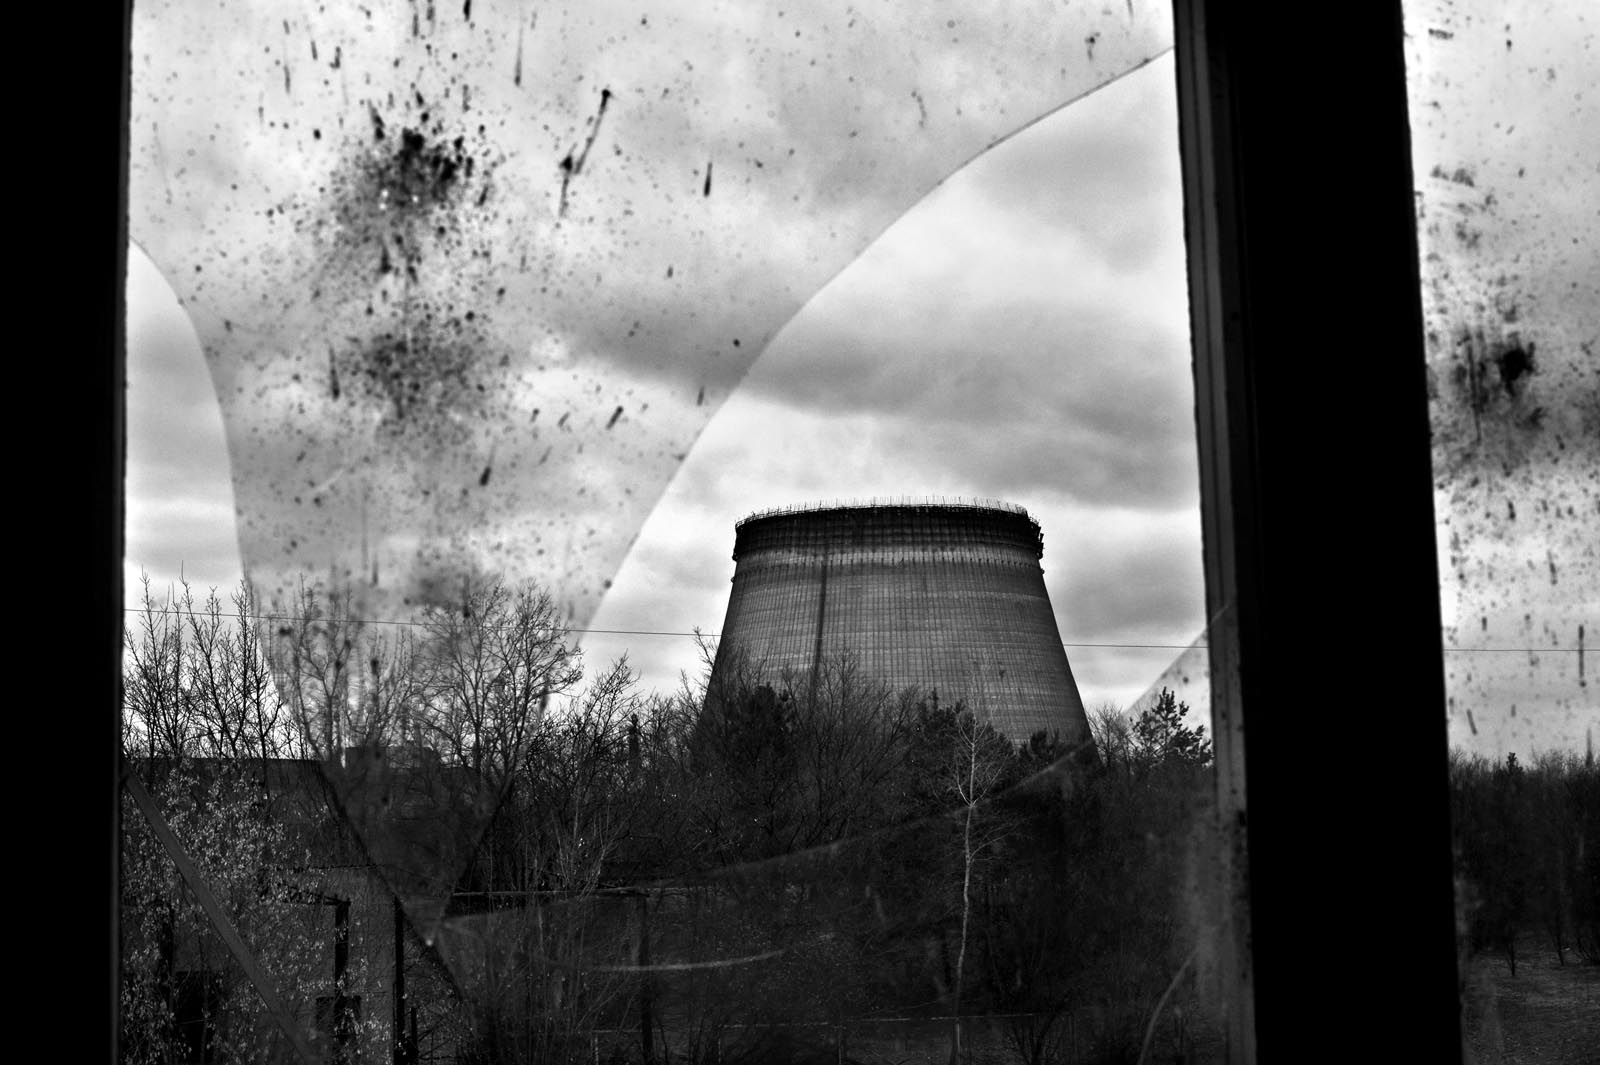 chernobyl_03